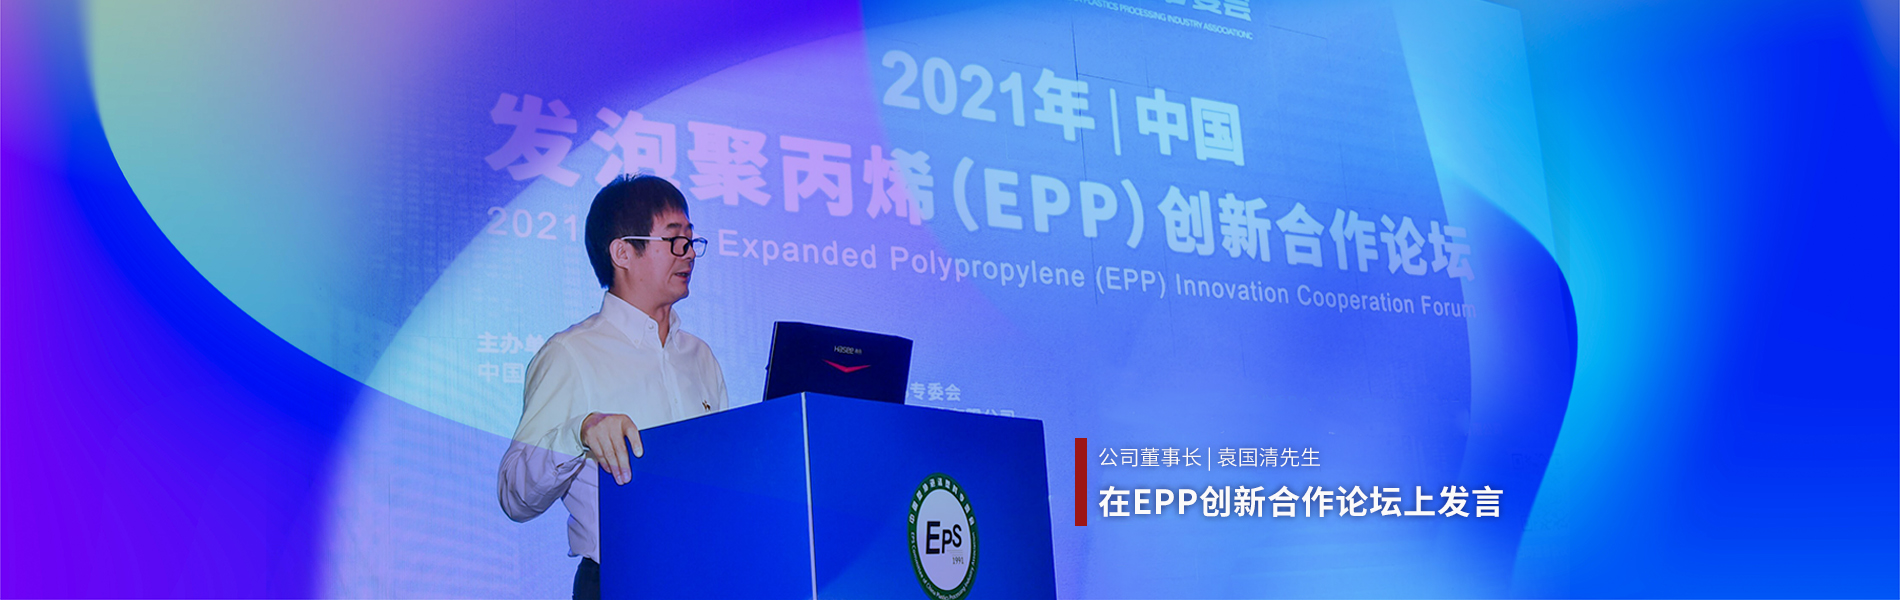 袁国清在EPP创新论坛上发言